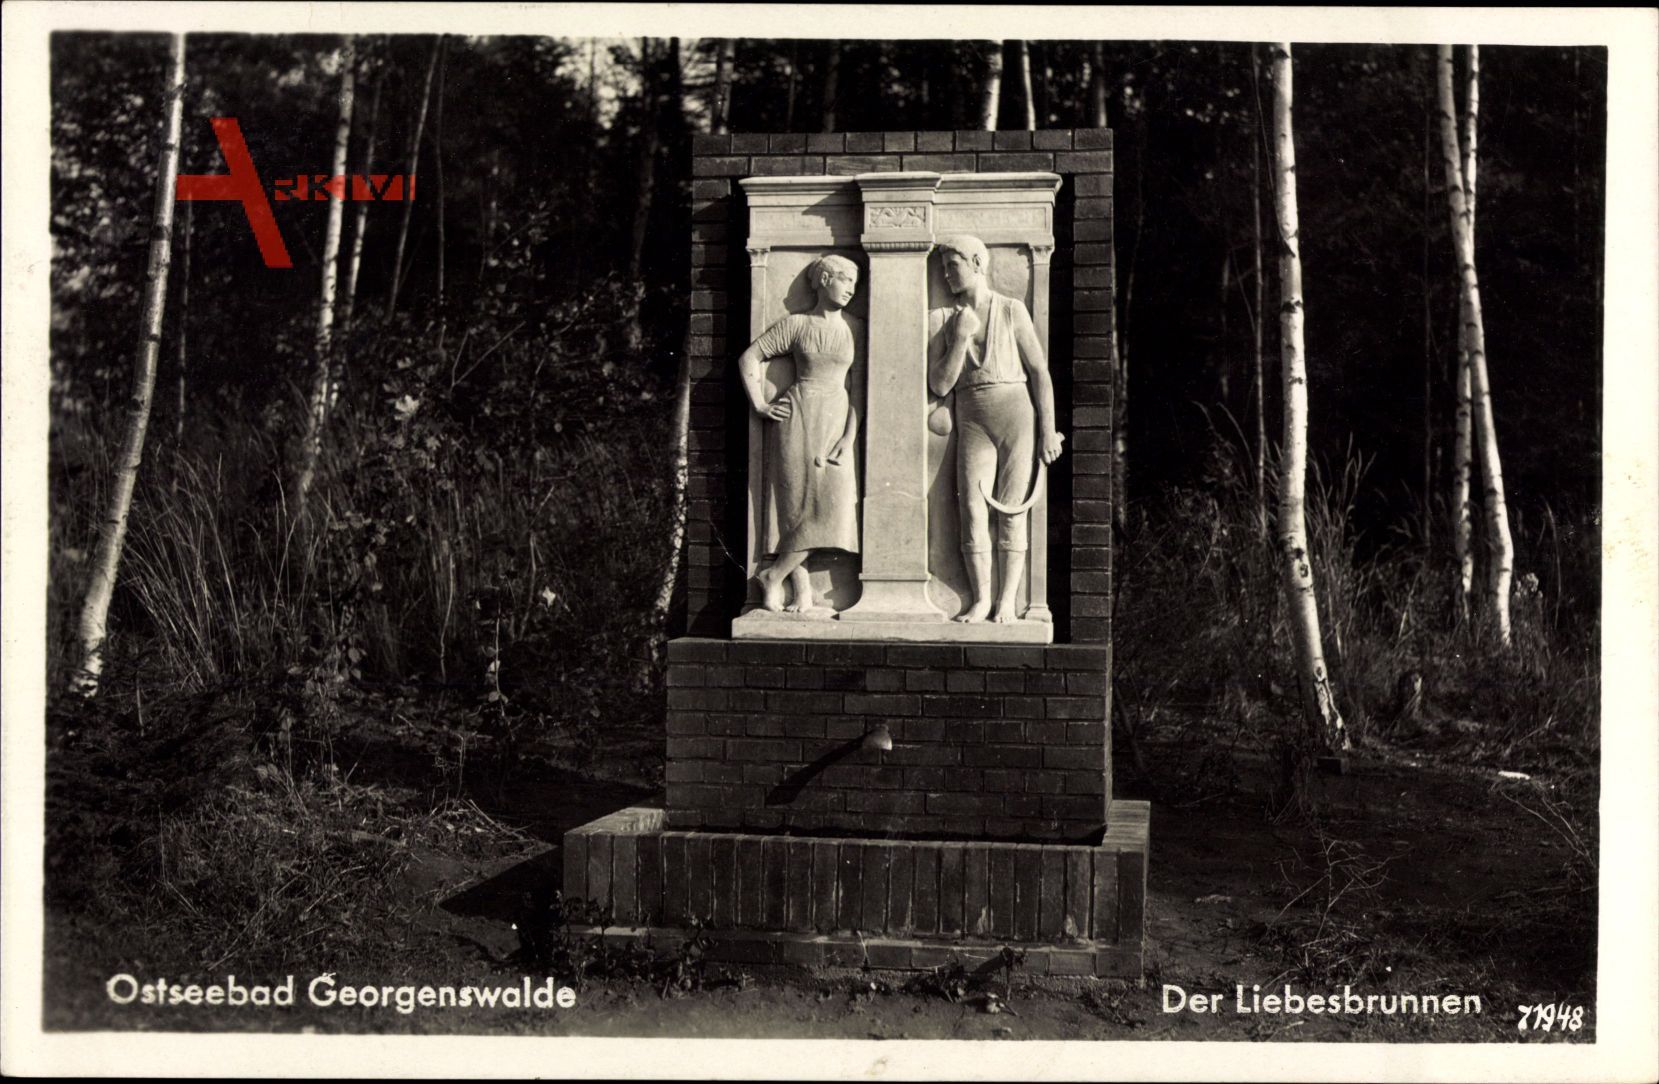 Otradnoje Rauschen Georgenswalde Ostpreußen, Liebesbrunnen